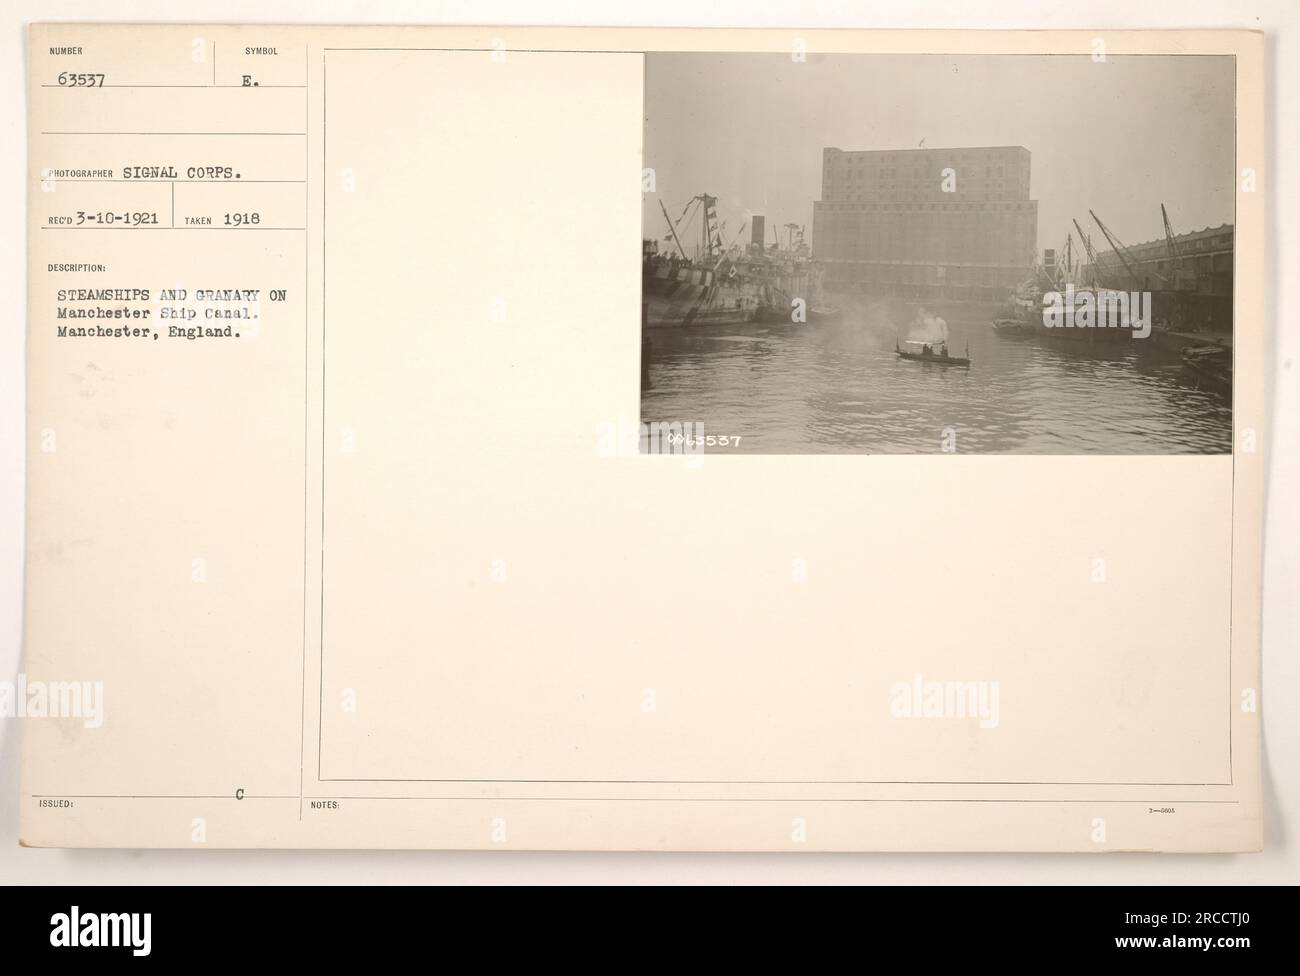 Ein Foto aus dem Jahr 1918 zeigt einen Blick auf Dampfschiffe und eine Granaranlage auf dem Manchester Ship Canal in Manchester, England. Das Bild wurde vom Signalkorps aufgenommen und mit dem Symbol 63537 versehen. In der Beschreibung wird der Standort vermerkt und zusätzliche Details angegeben, während der Lichtbildausweis als 9063557 3-M400 bezeichnet wird. Stockfoto